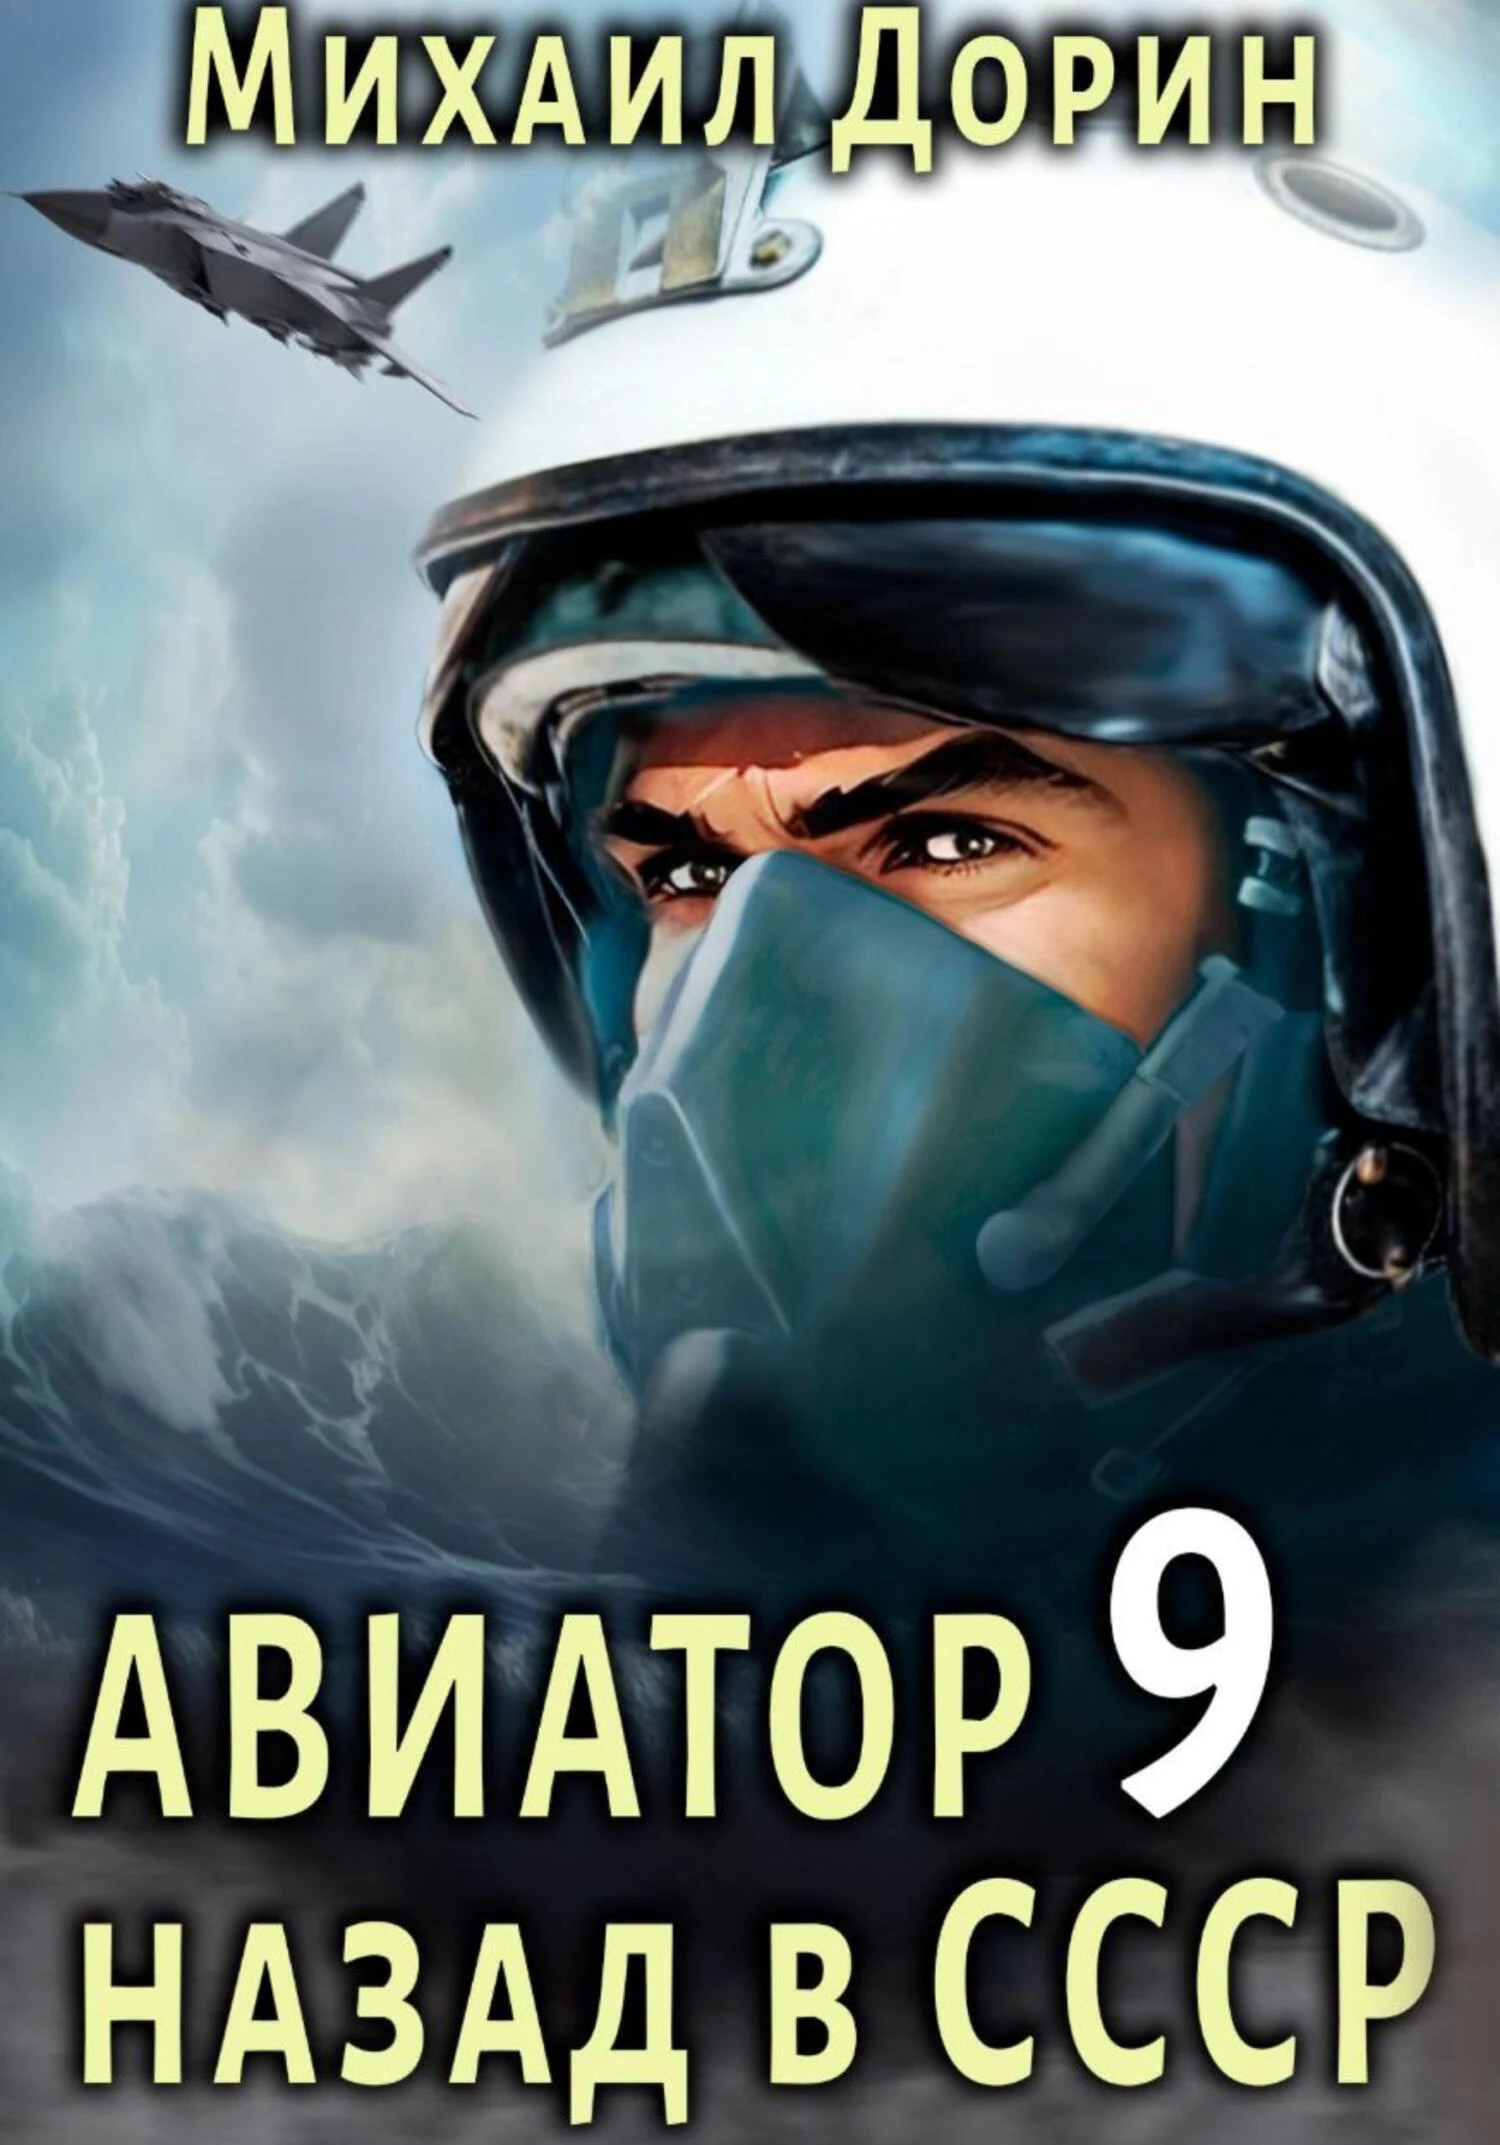 Авиатор: назад в СССР 9